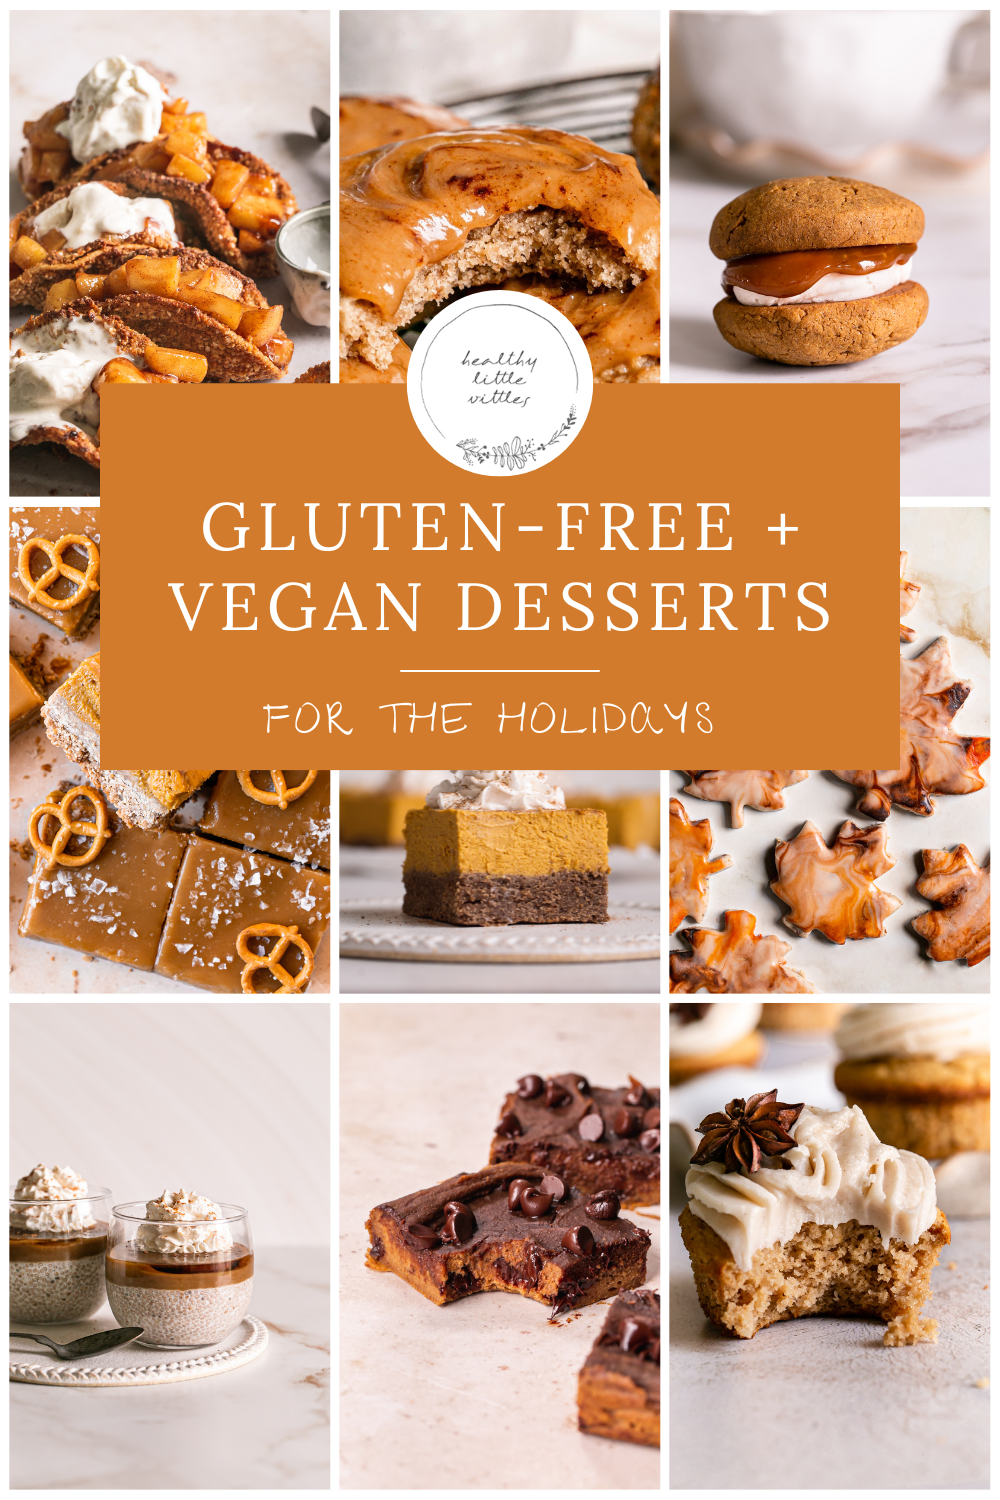 https://healthylittlevittles.com/wp-content/uploads/2022/11/Vegan-Desserts-for-the-Holidays-.png